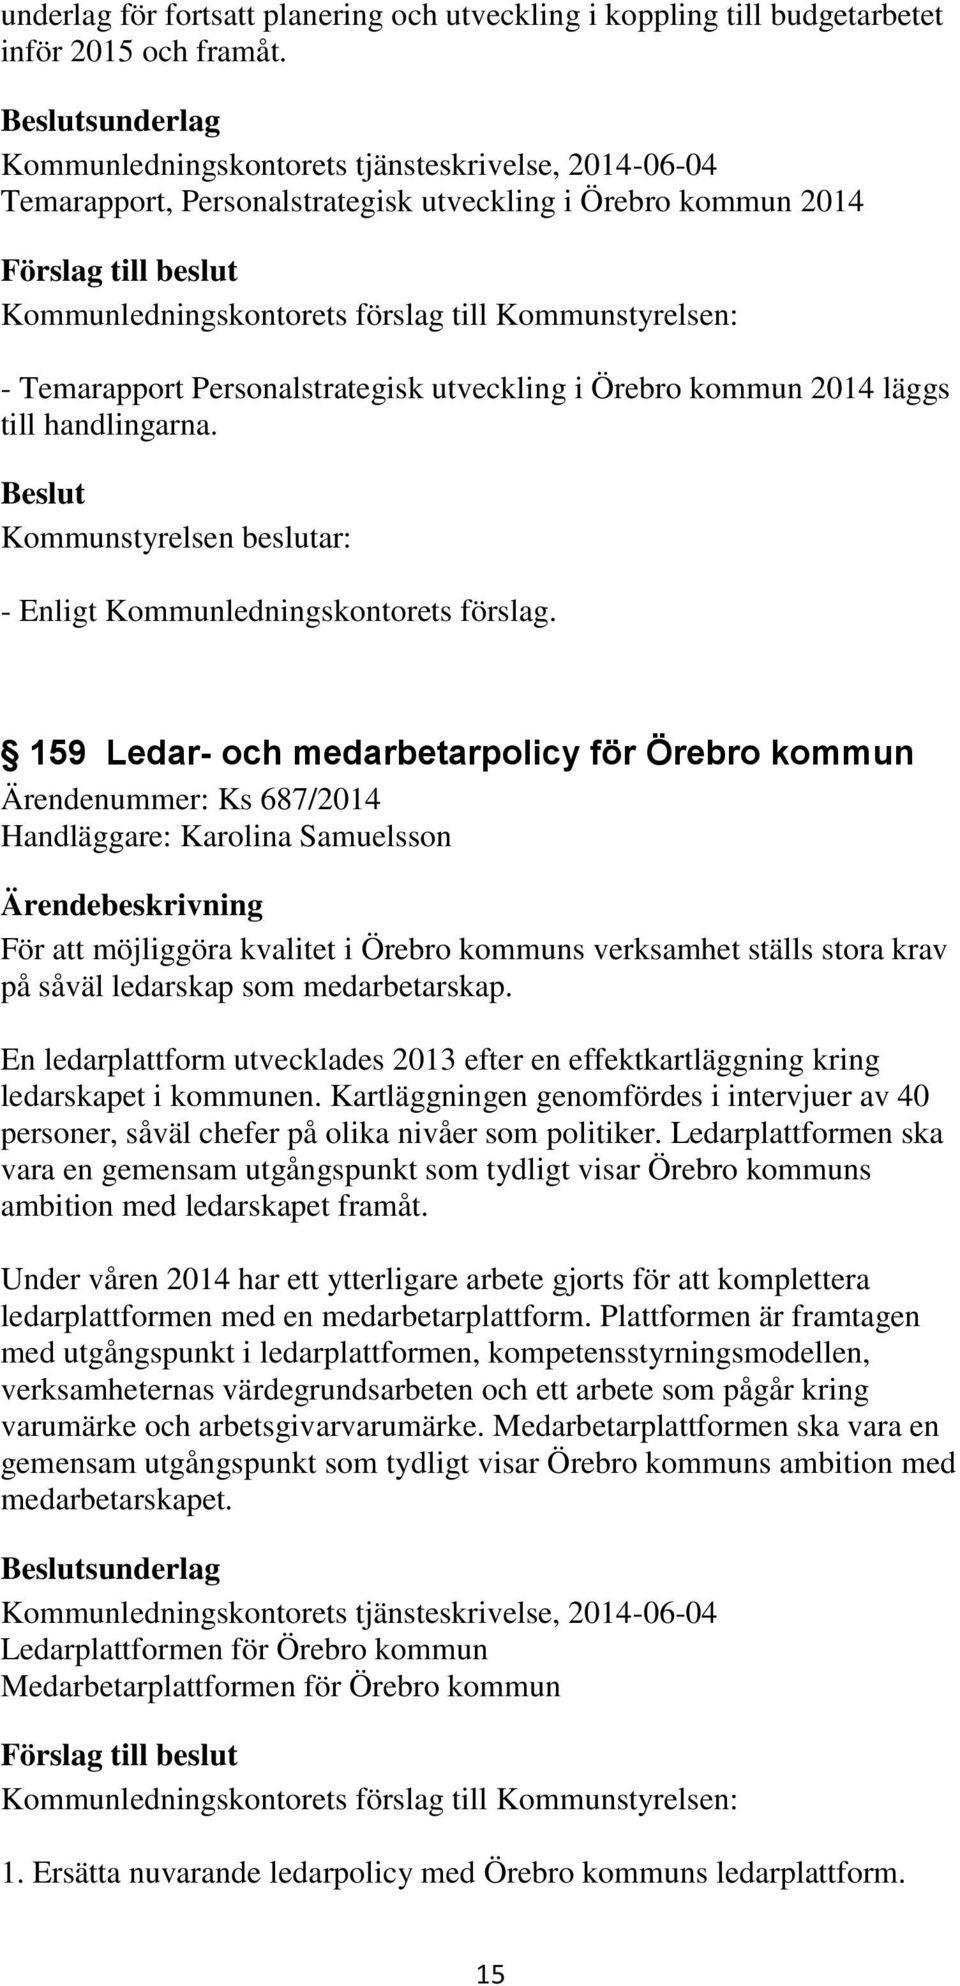 Personalstrategisk utveckling i Örebro kommun 2014 läggs till handlingarna. Kommunstyrelsen beslutar: - Enligt Kommunledningskontorets förslag.